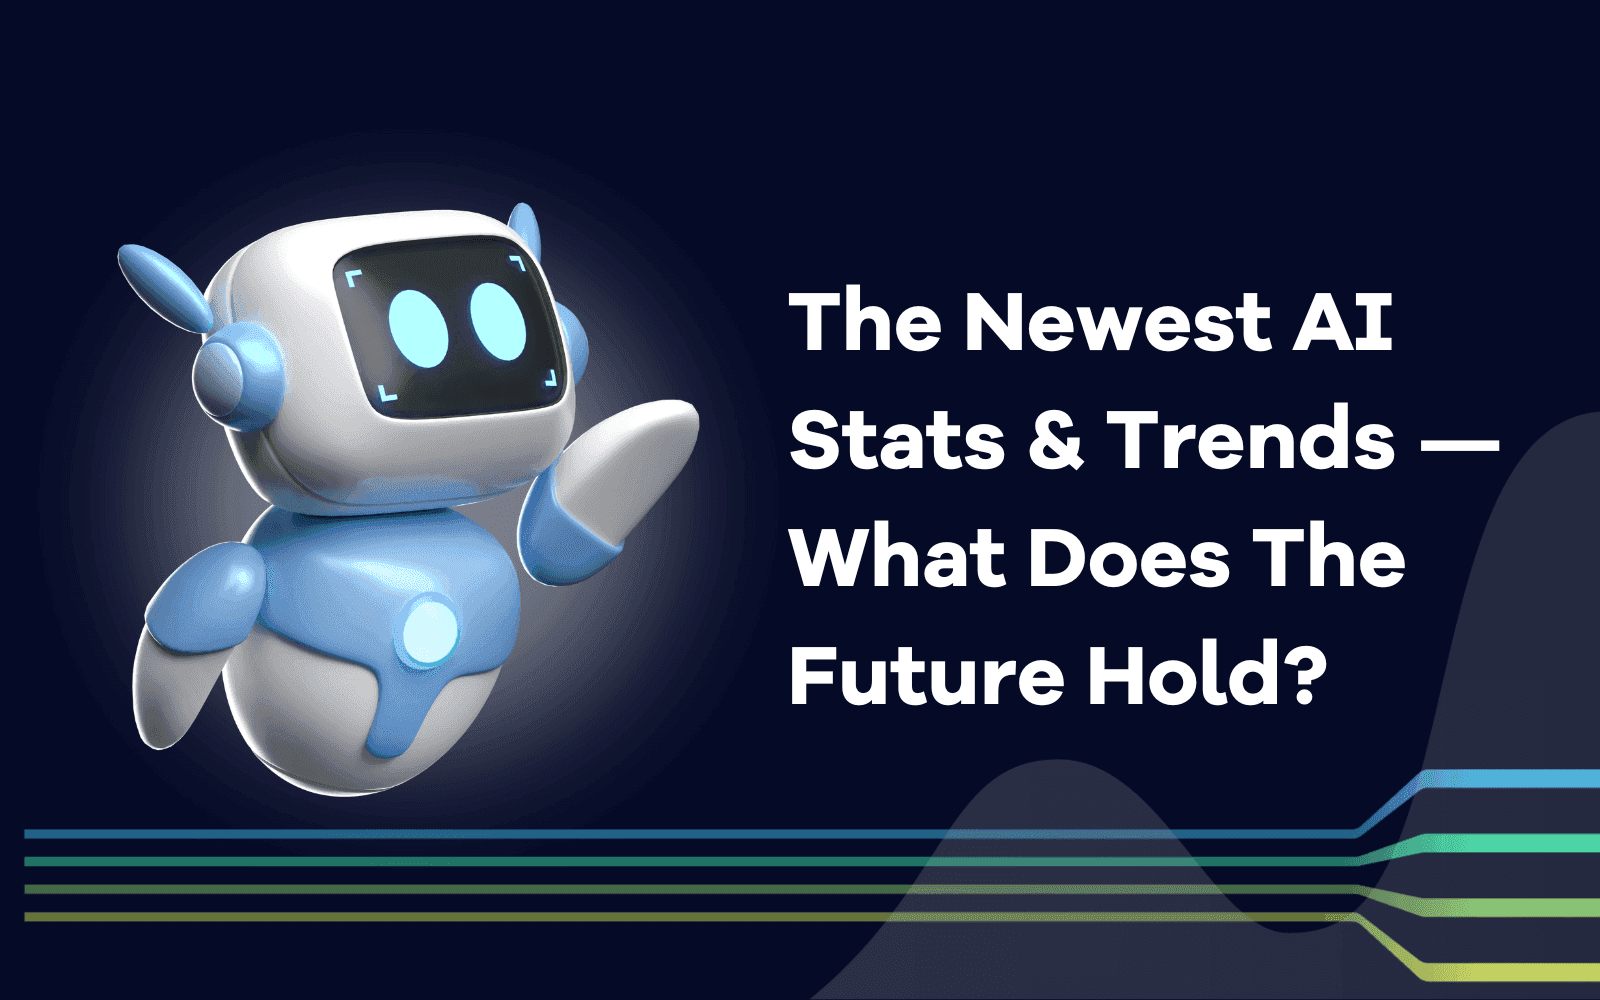 Najnowsze statystyki i trendy dotyczące sztucznej inteligencji - co przyniesie przyszłość?